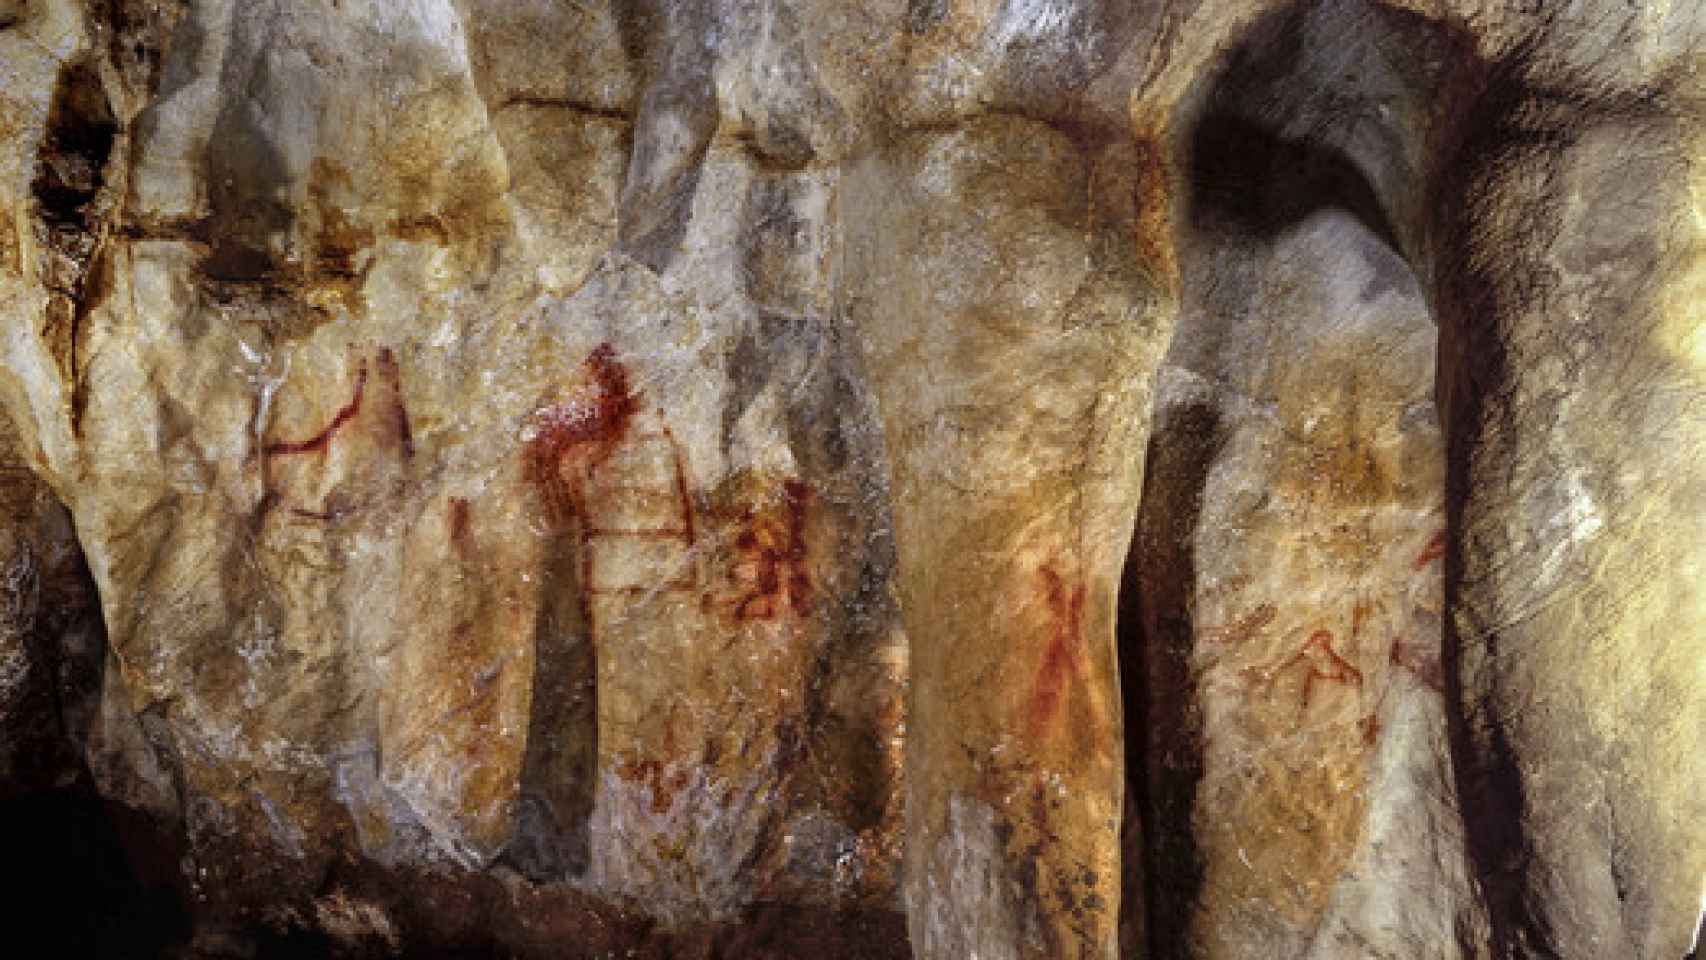 Pinturas en la cueva de La Pasiega hechas por neandertales hace más de 64.000 años